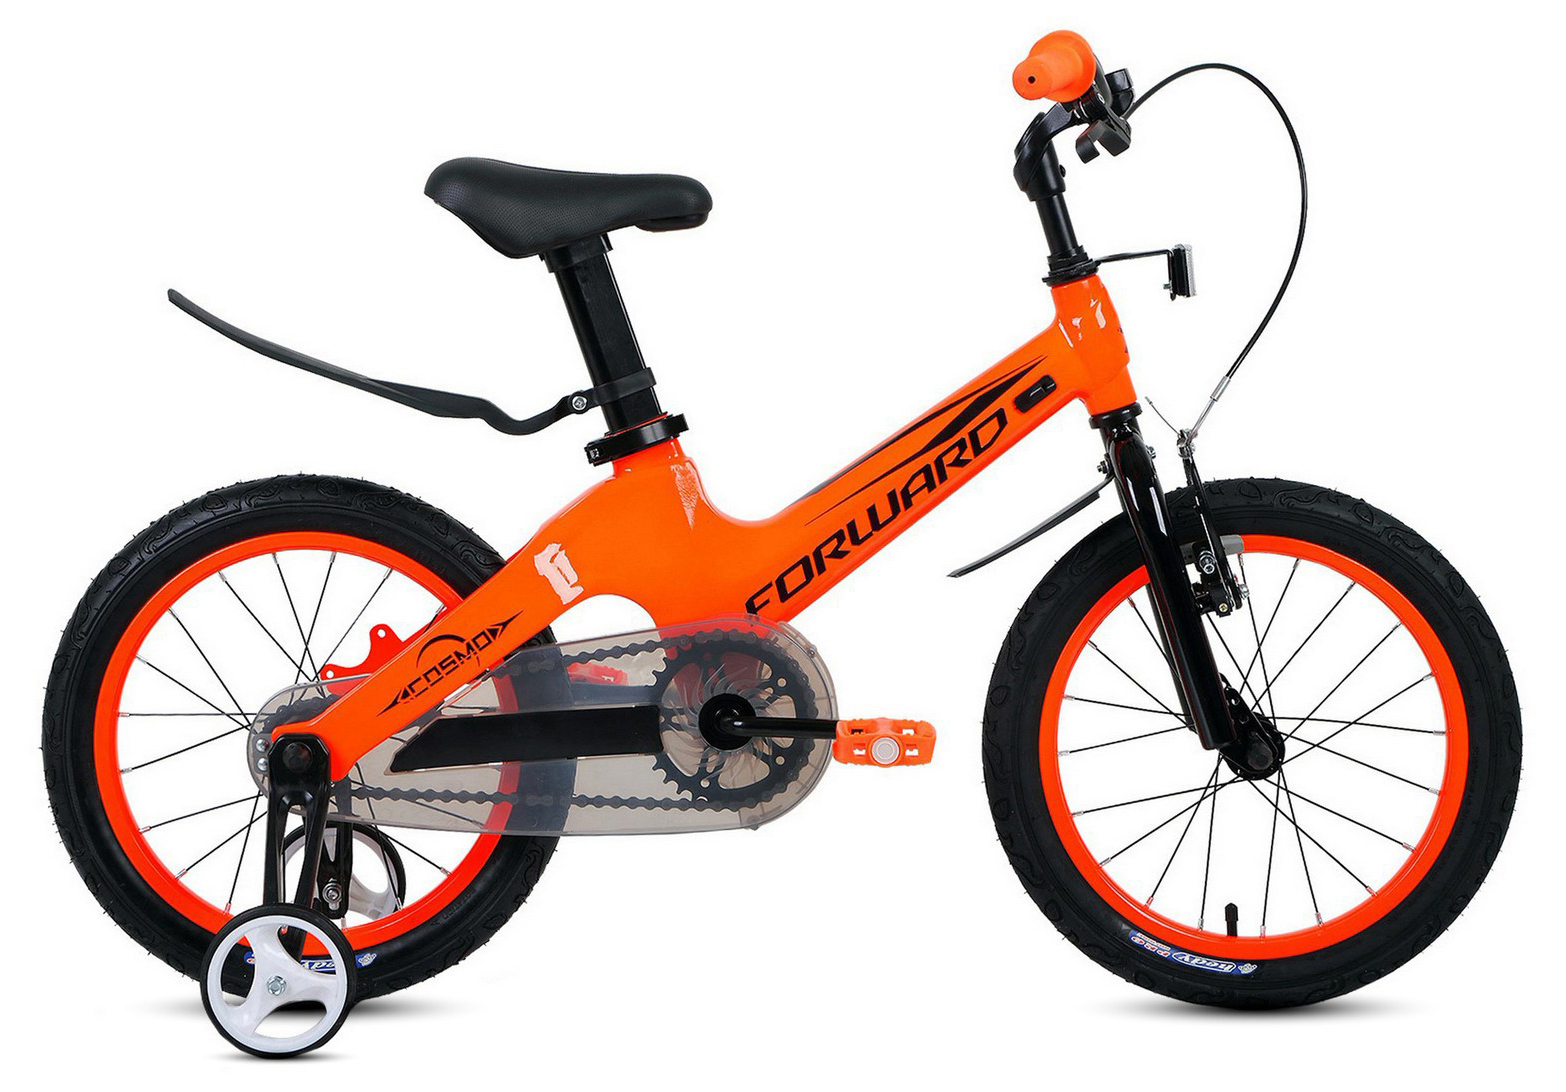  Отзывы о Детском велосипеде Forward Cosmo 16 (2021) 2021